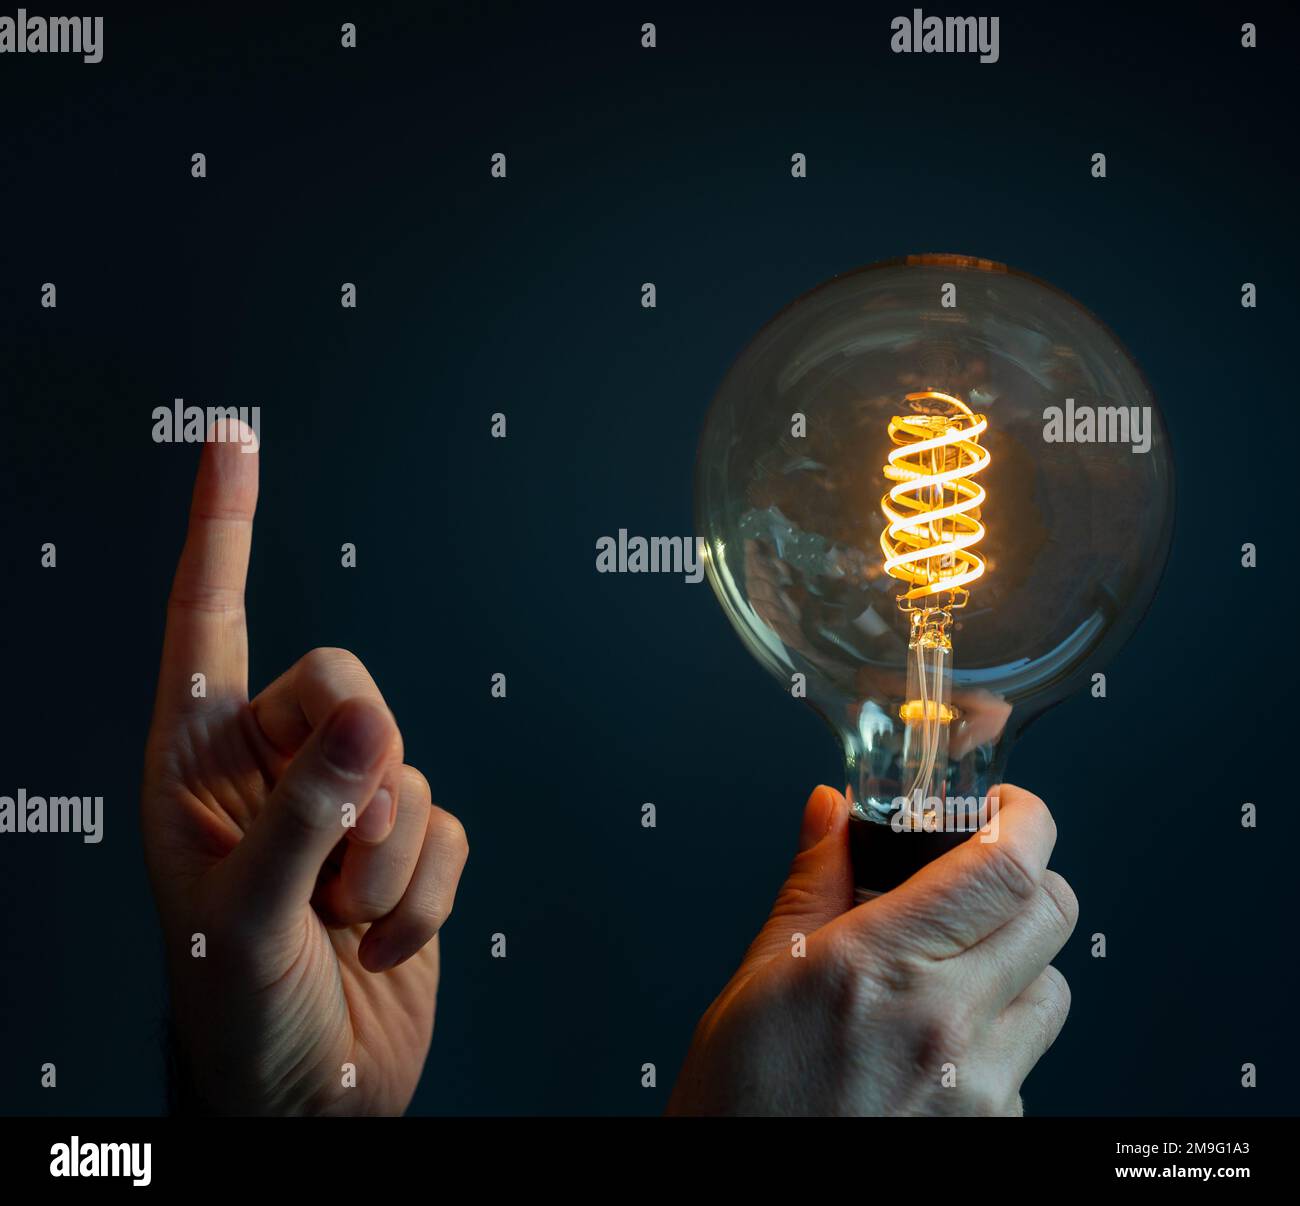 Symbole d'économie d'énergie. La main tient une ampoule à incandescence où l'intensité lumineuse est faible. Banque D'Images